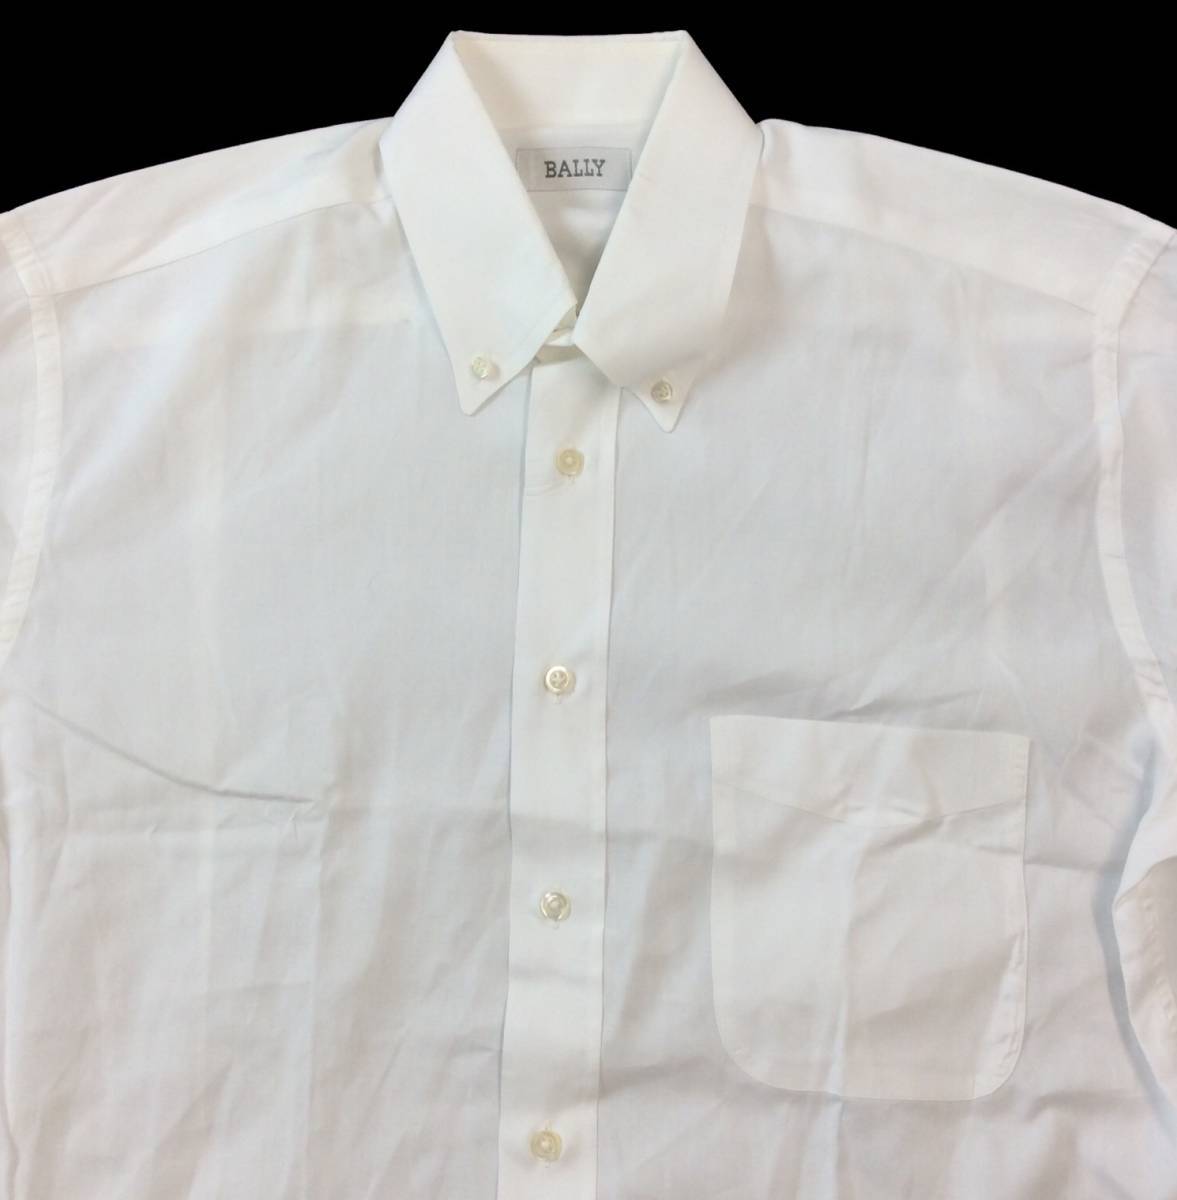 BALLY バリー 長袖シャツ ドレスシャツ ホワイト メンズ 39 / 151/2 メンズ 送料250円　(ma)_画像2